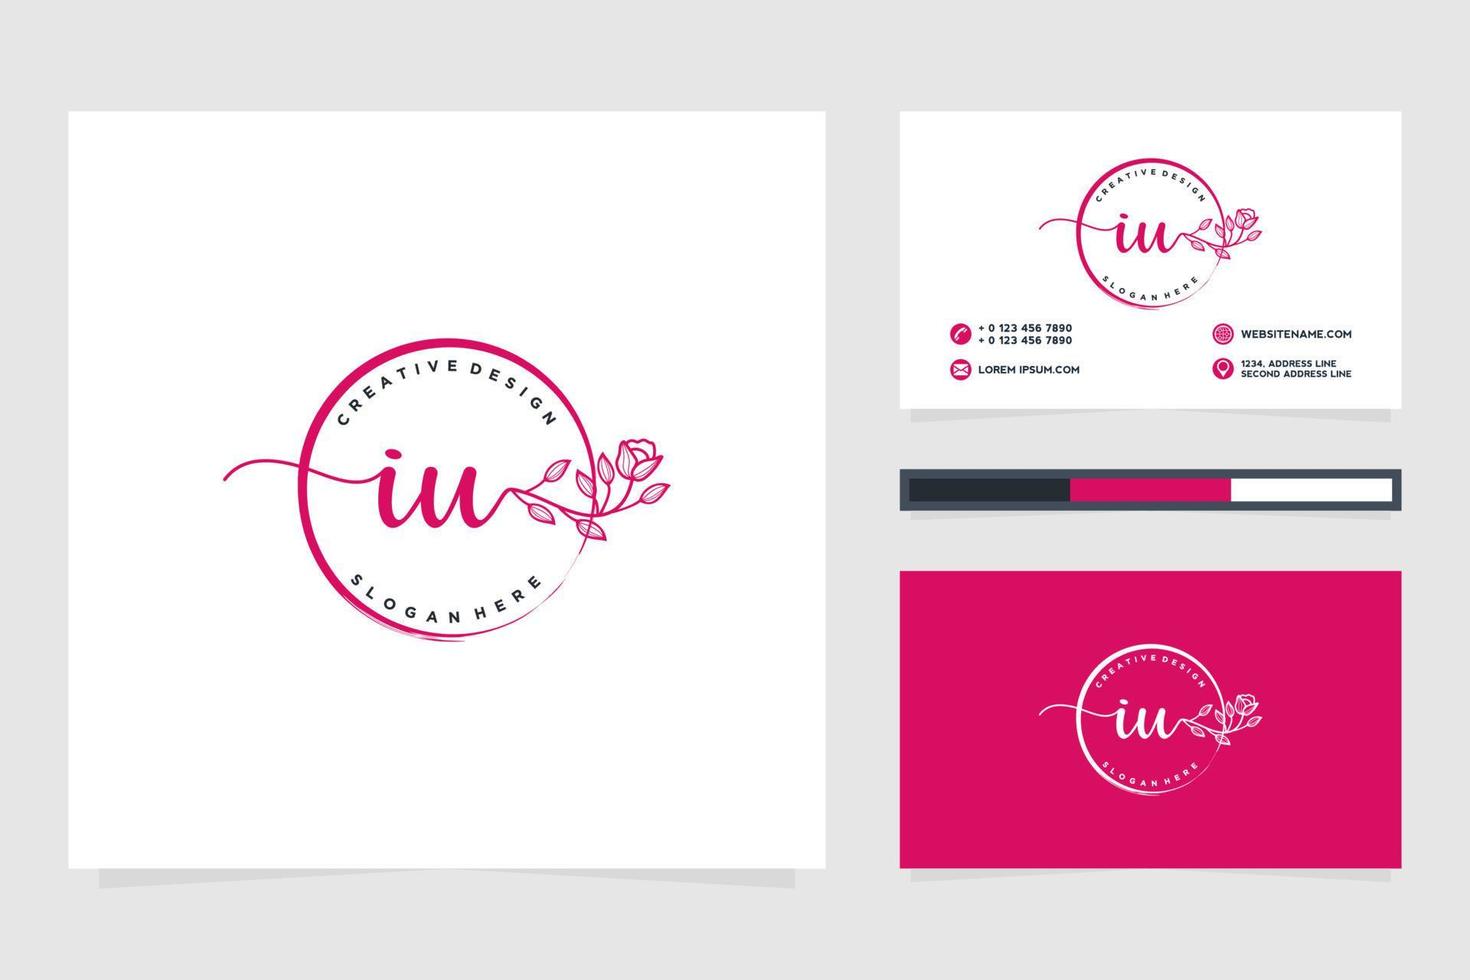 första iu feminin logotyp samlingar och företag kort templat premie vektor